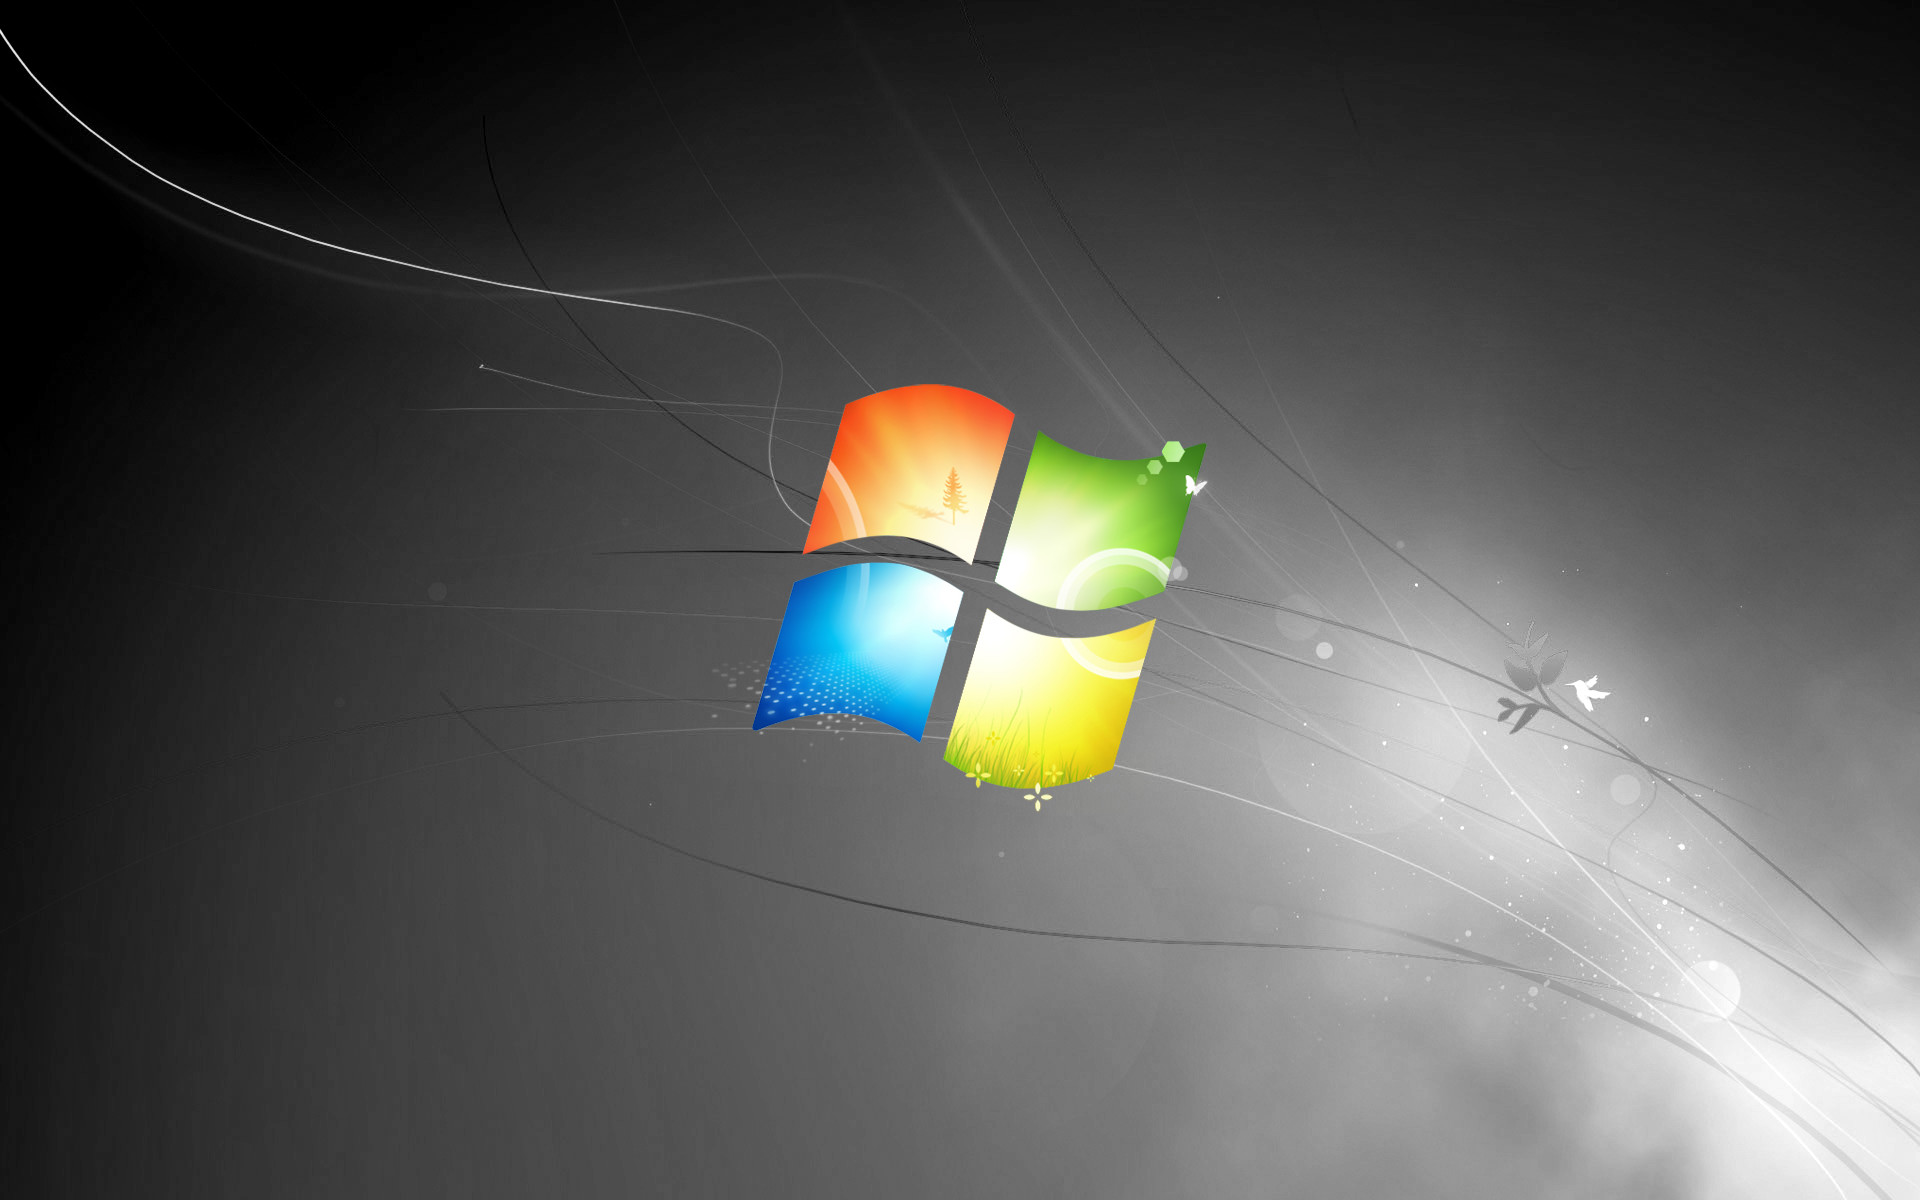 Hình nền Windows 7 đen làm nổi bật màn hình Desktop của bạn và cho bạn cảm giác rất đặc biệt. Bạn muốn khám phá tất cả những tùy chọn hình nền Windows 7 đen tuyệt đẹp và ấn tượng nhất? Hãy nhấp vào hình ảnh để bắt đầu ngay lập tức!